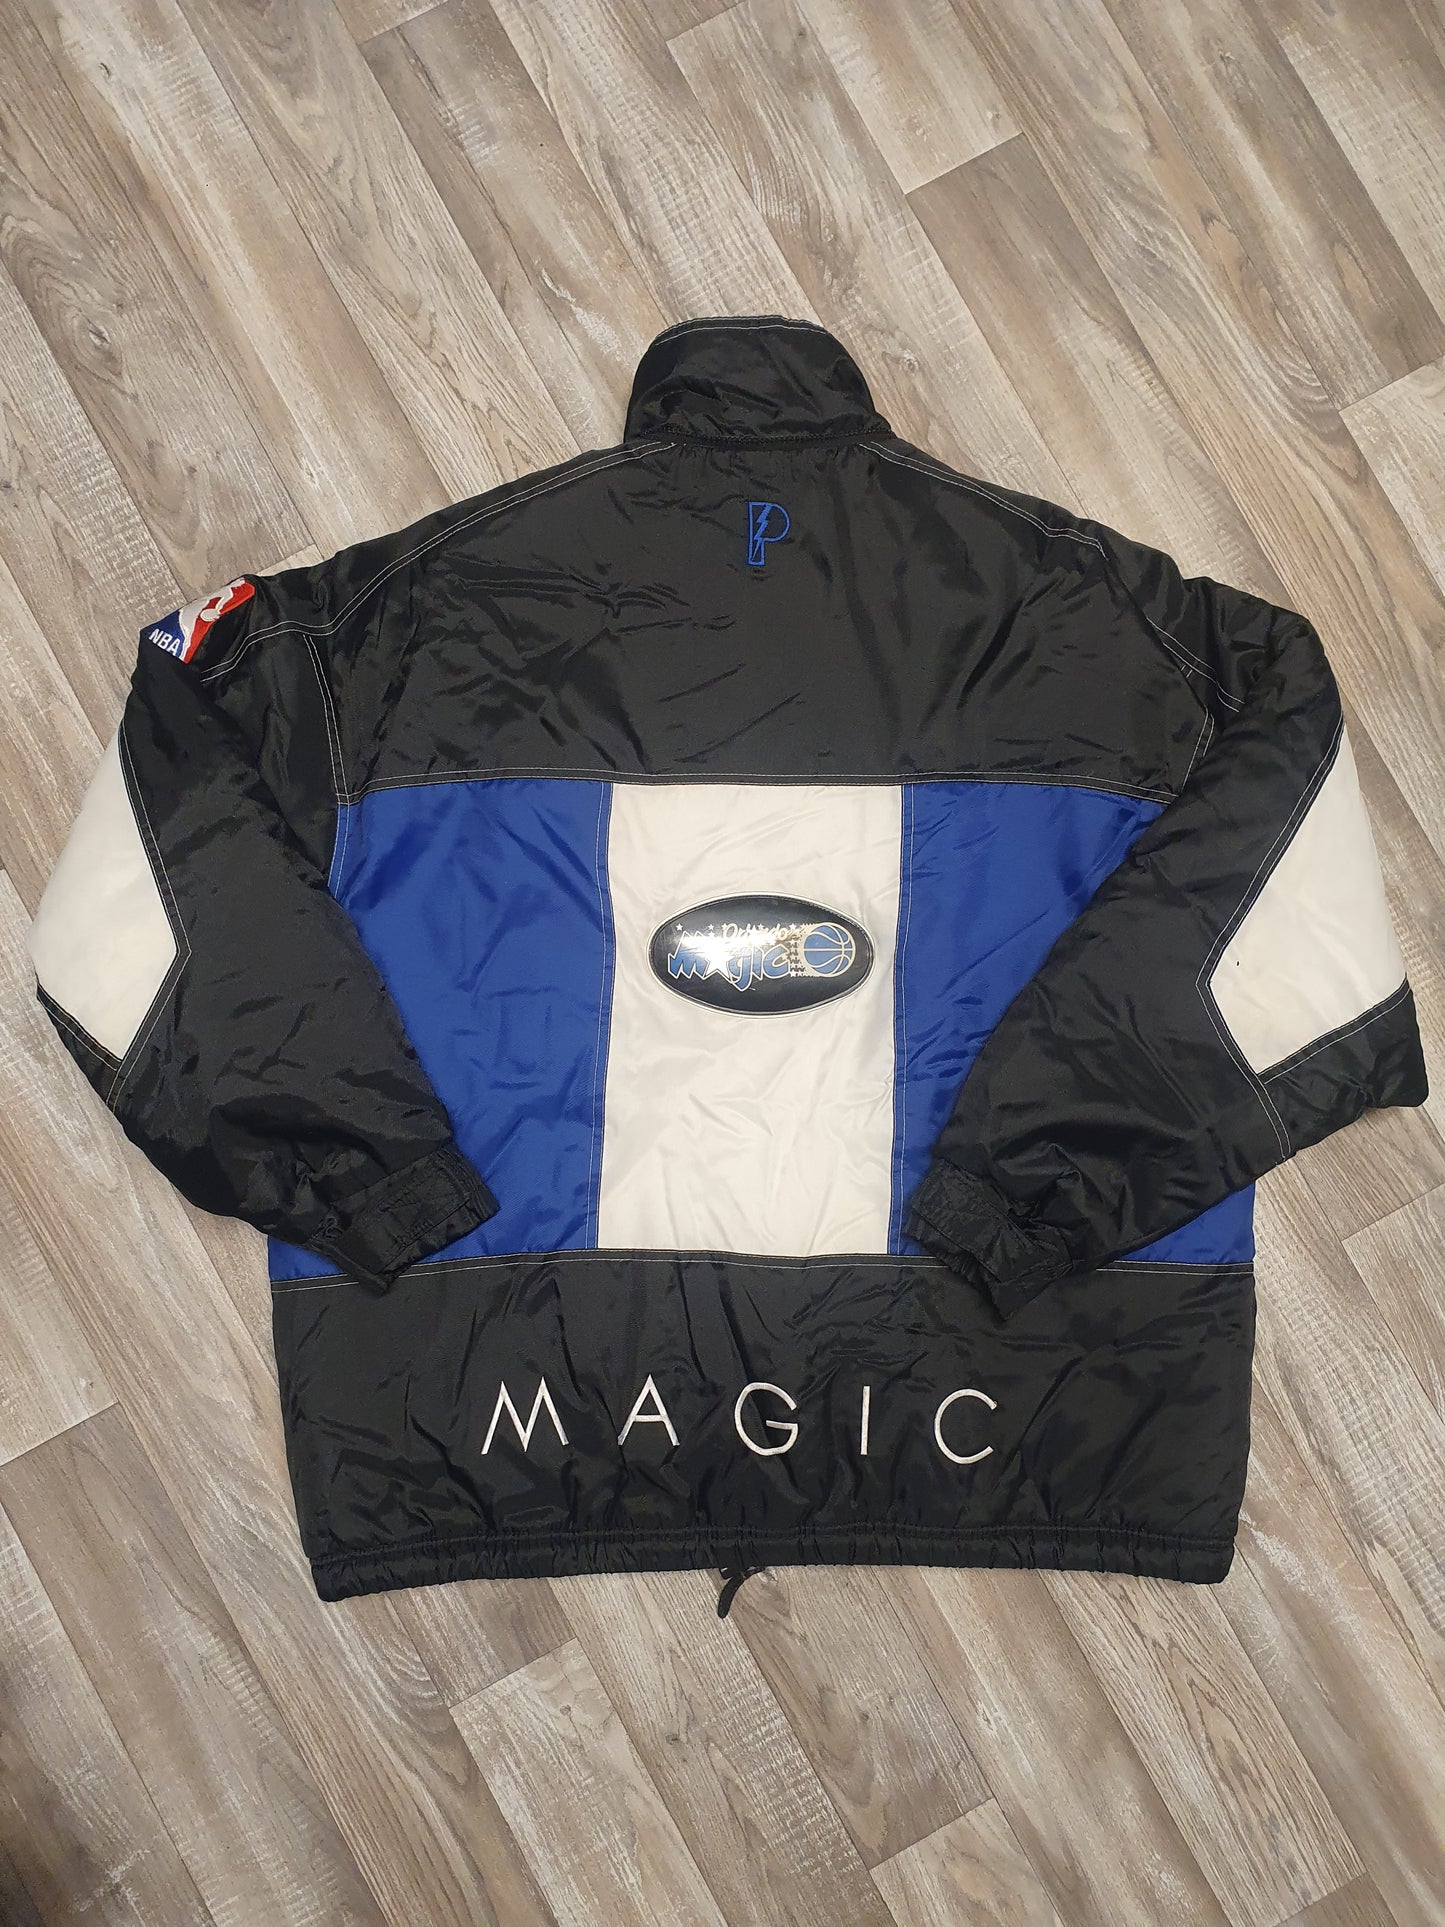 Orlando Magic Jacket Size Large